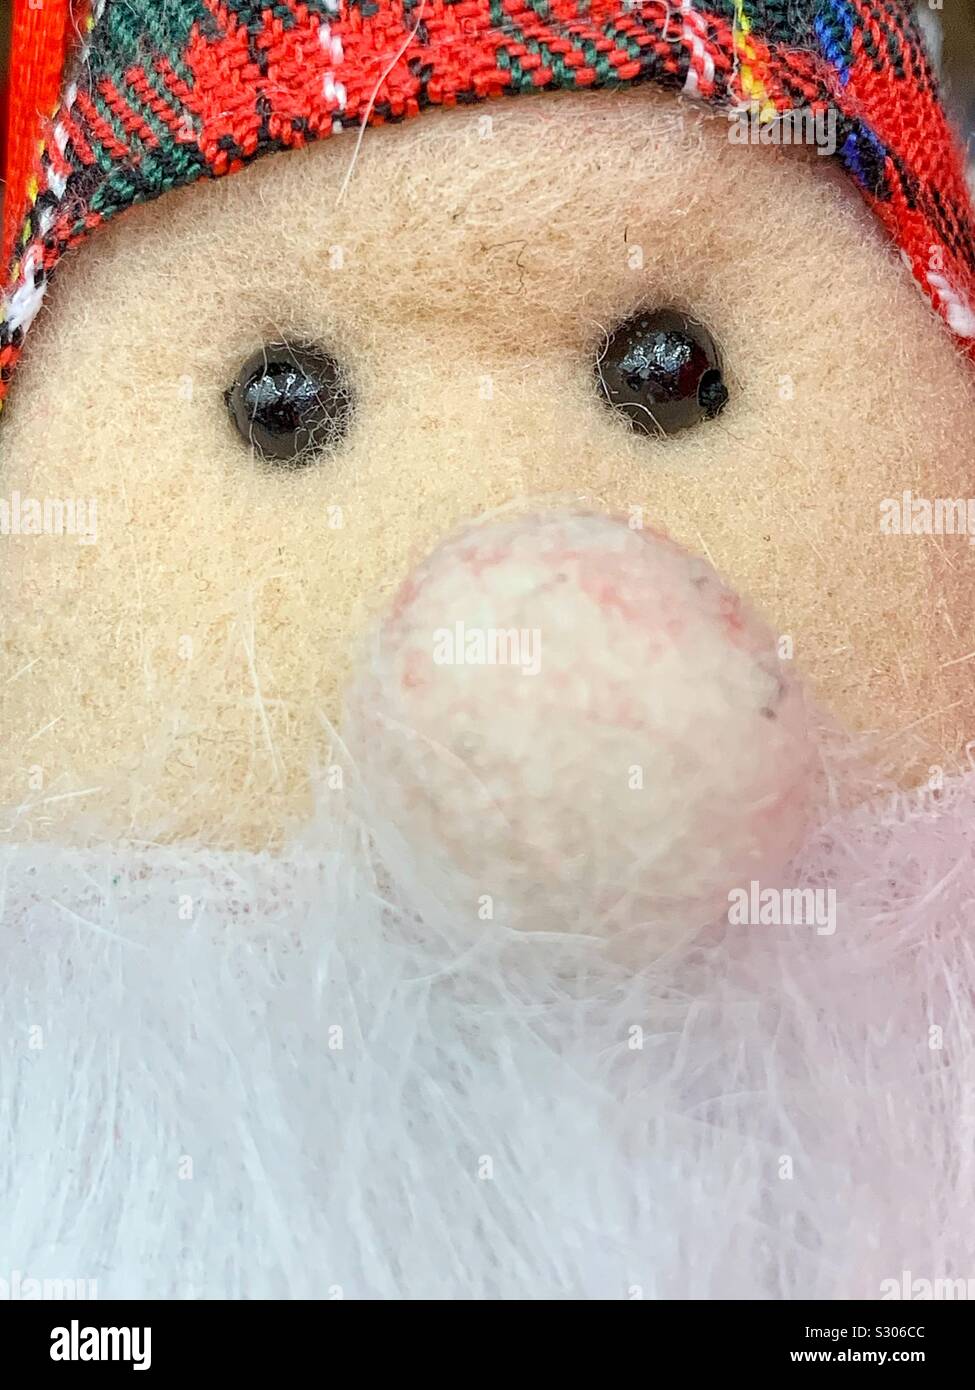 Big nose Christmas Santa stuffed animal lovie. Stock Photo